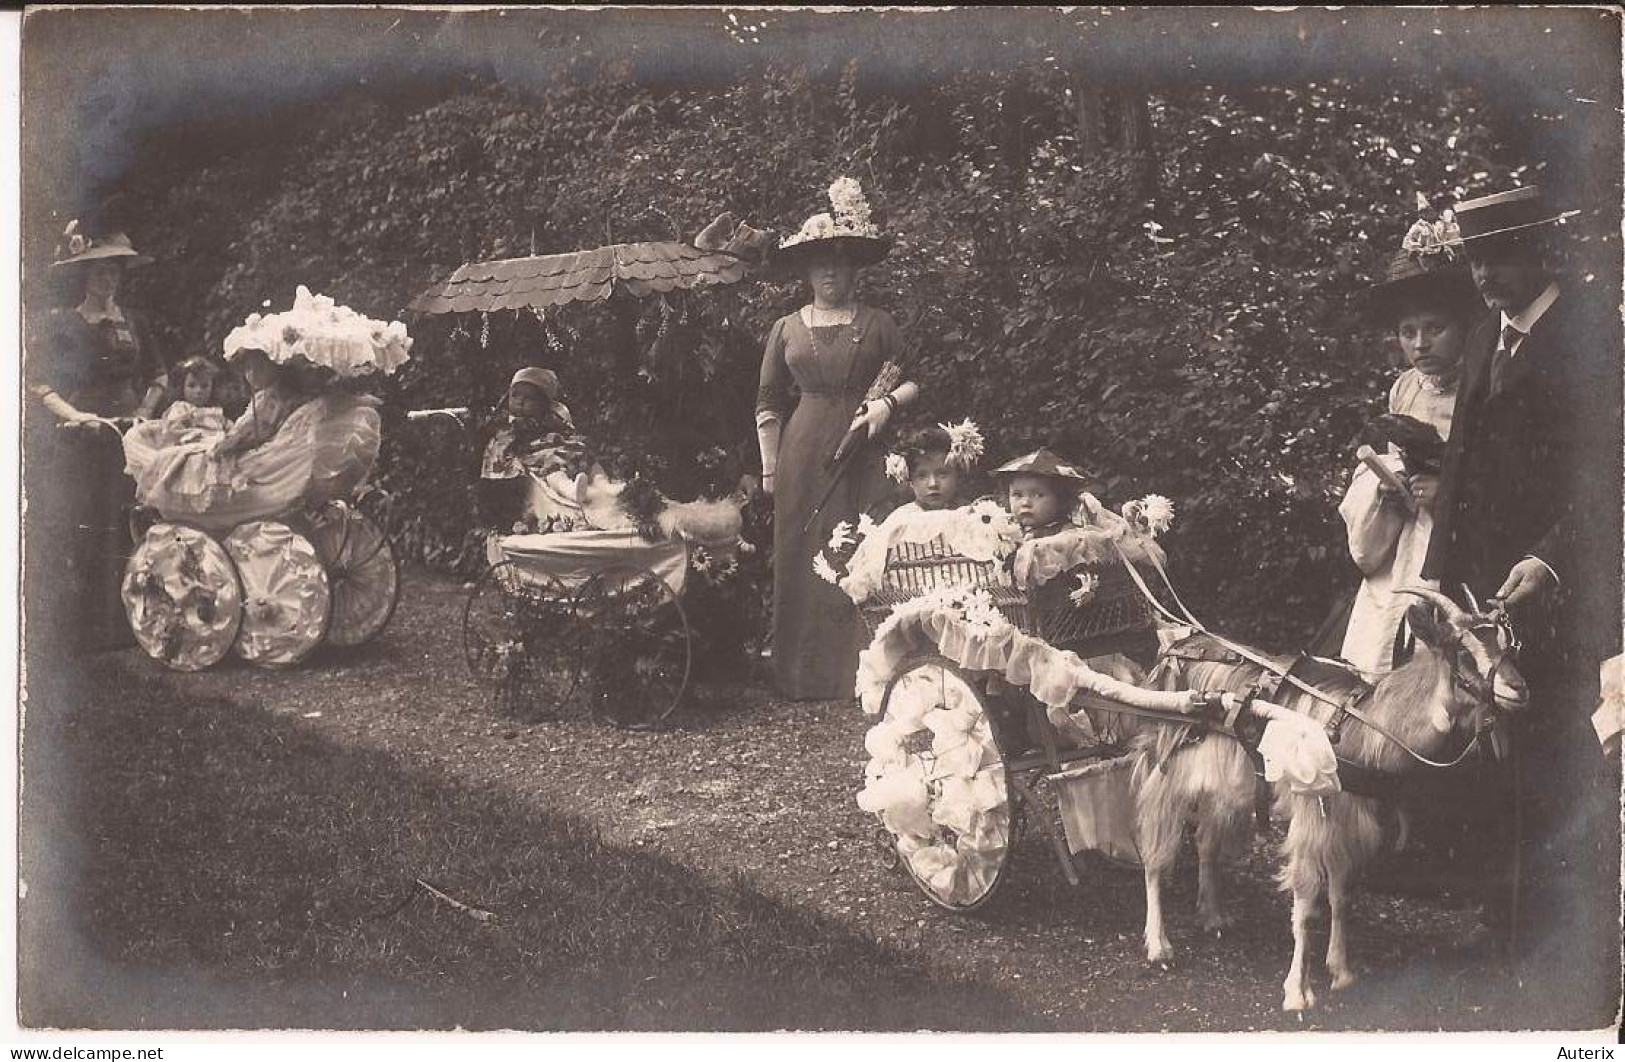 75 Sortie De Kermesse Paris 1903 D'après Le Site 'Terre Des Chèvres' Attelage Chevre Goat Cart - Parcs, Jardins